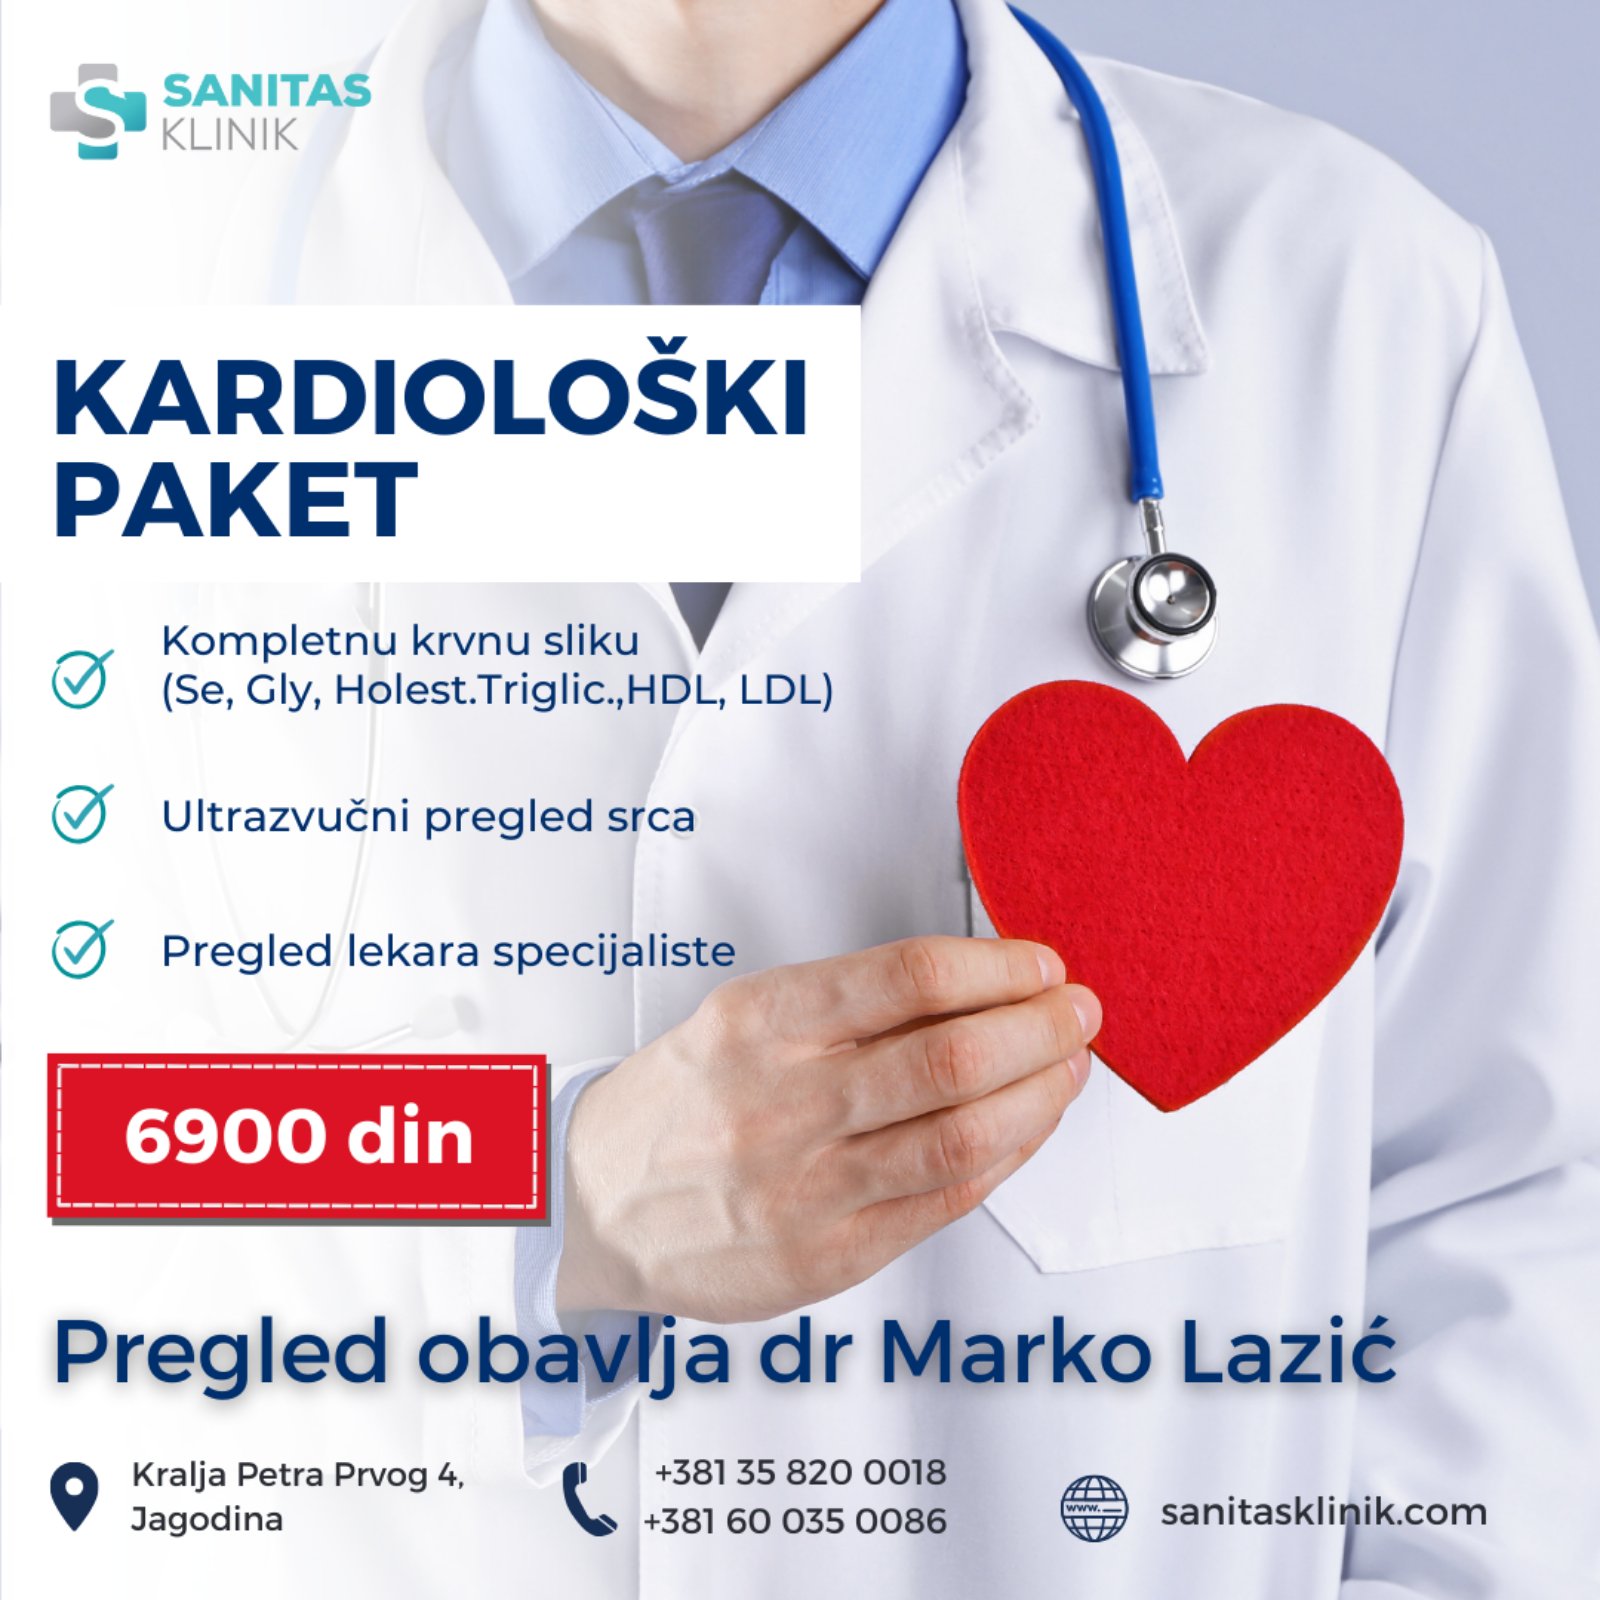 Sveobuhvatni kardiološki paket u ponudi Sanitas klinike